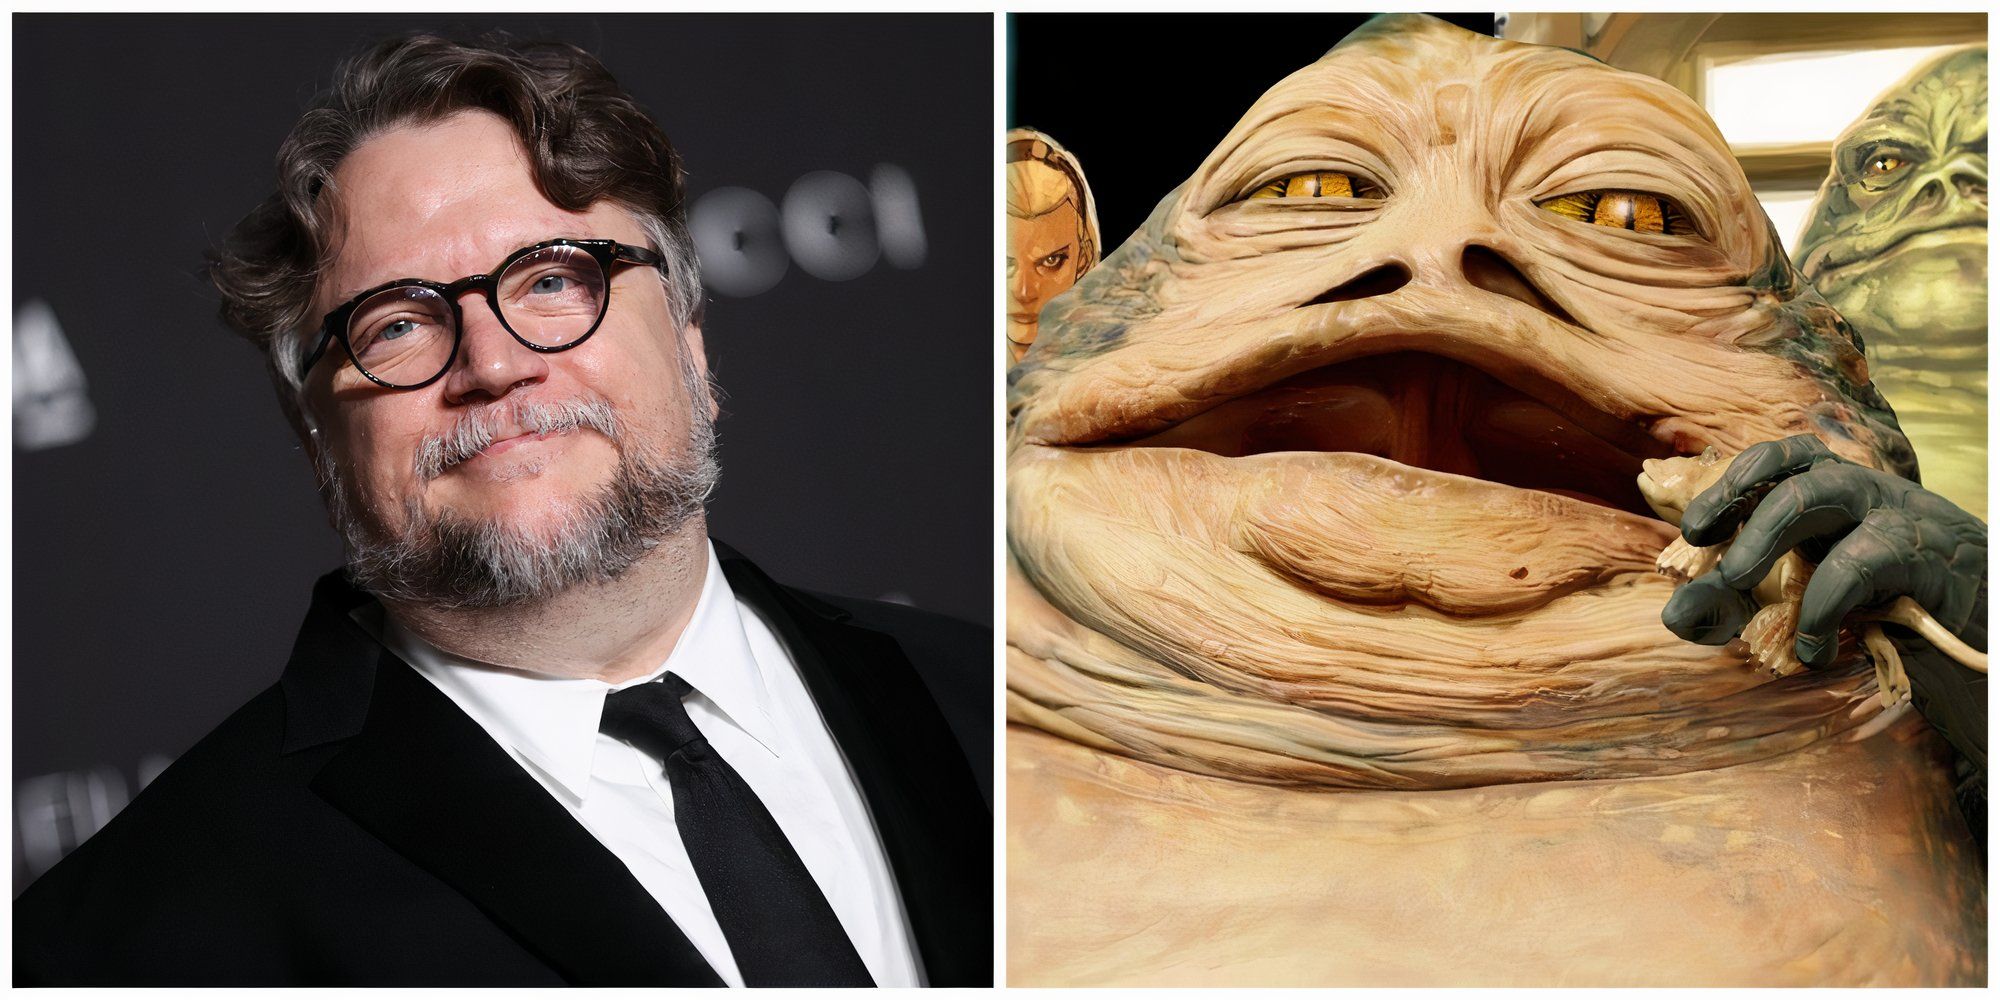 Guillermo Del Toro Rise of the Hutts